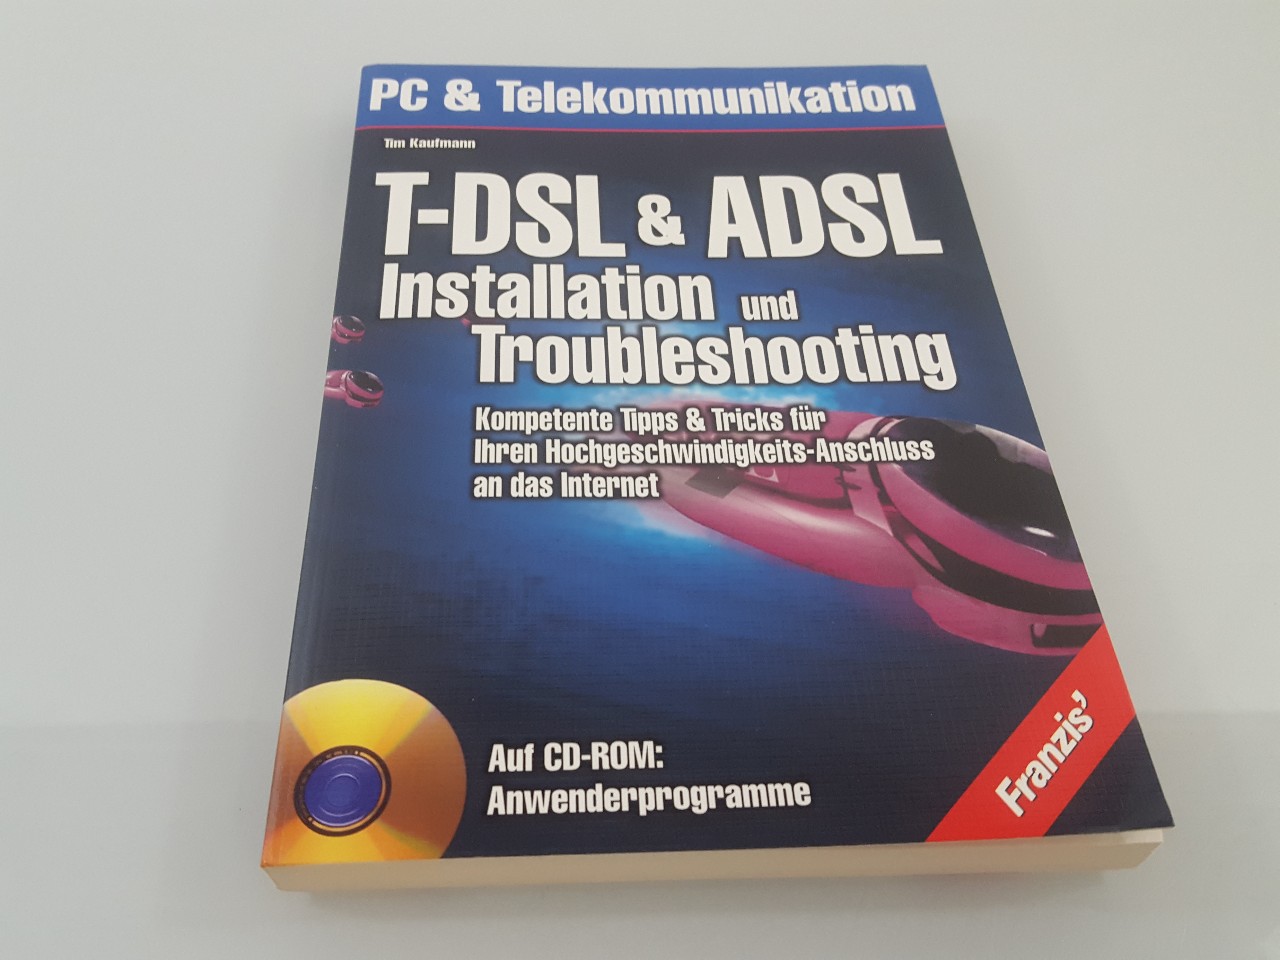 T-DSL & ADSL - Installation und Troubleshooting : kompetente Tipps & Tricks für Ihren Hochgeschwindigkeits-Anschluss an das Internet ; [auf CD-ROM: Anwenderprogramme] / Tim Kaufmann / PC & Telekommunikation - Kaufmann, Tim